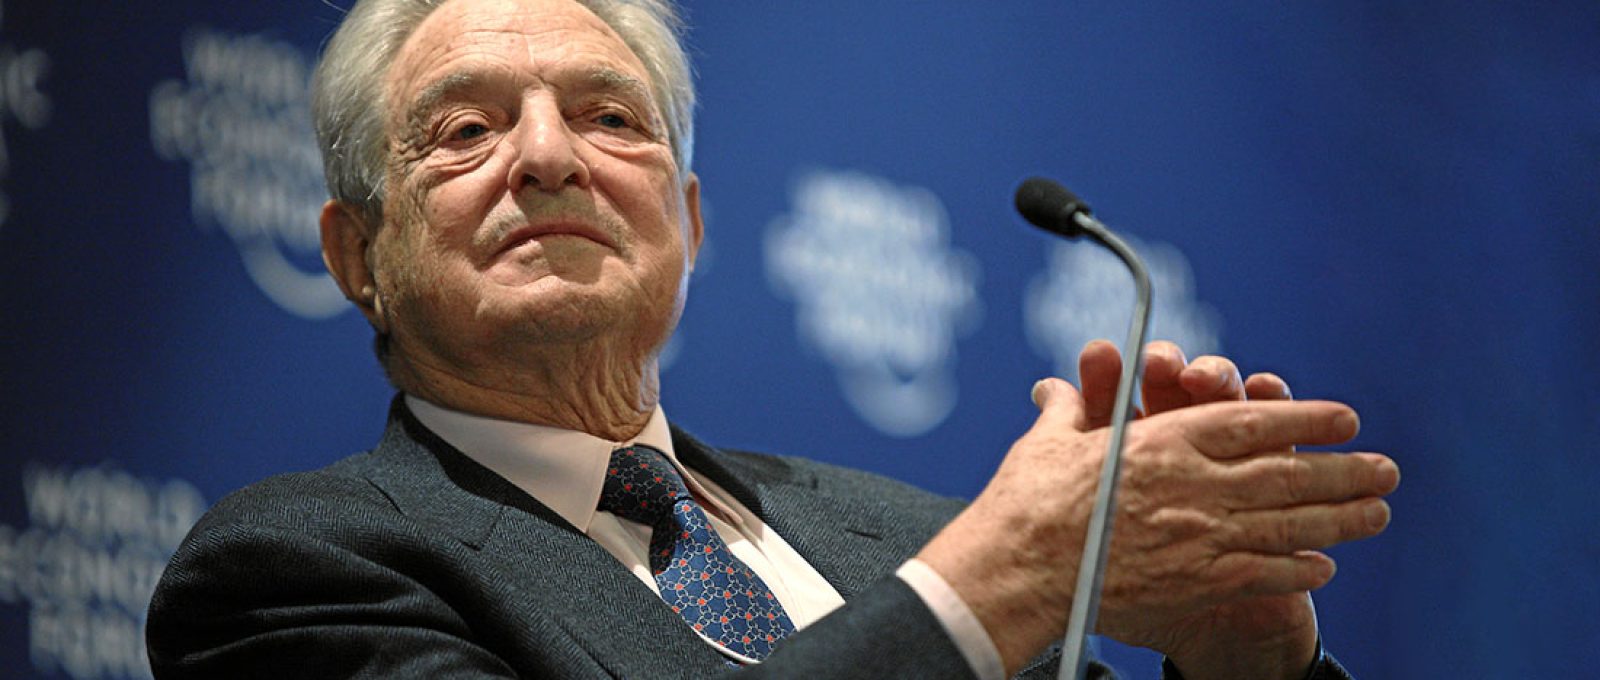 George Soros durante a Reunião Anual 2010 do Fórum Econômico Mundial em Davos, Suíça, em 27 de janeiro de 2010 (Sebastian Derungs/swiss-image.ch).